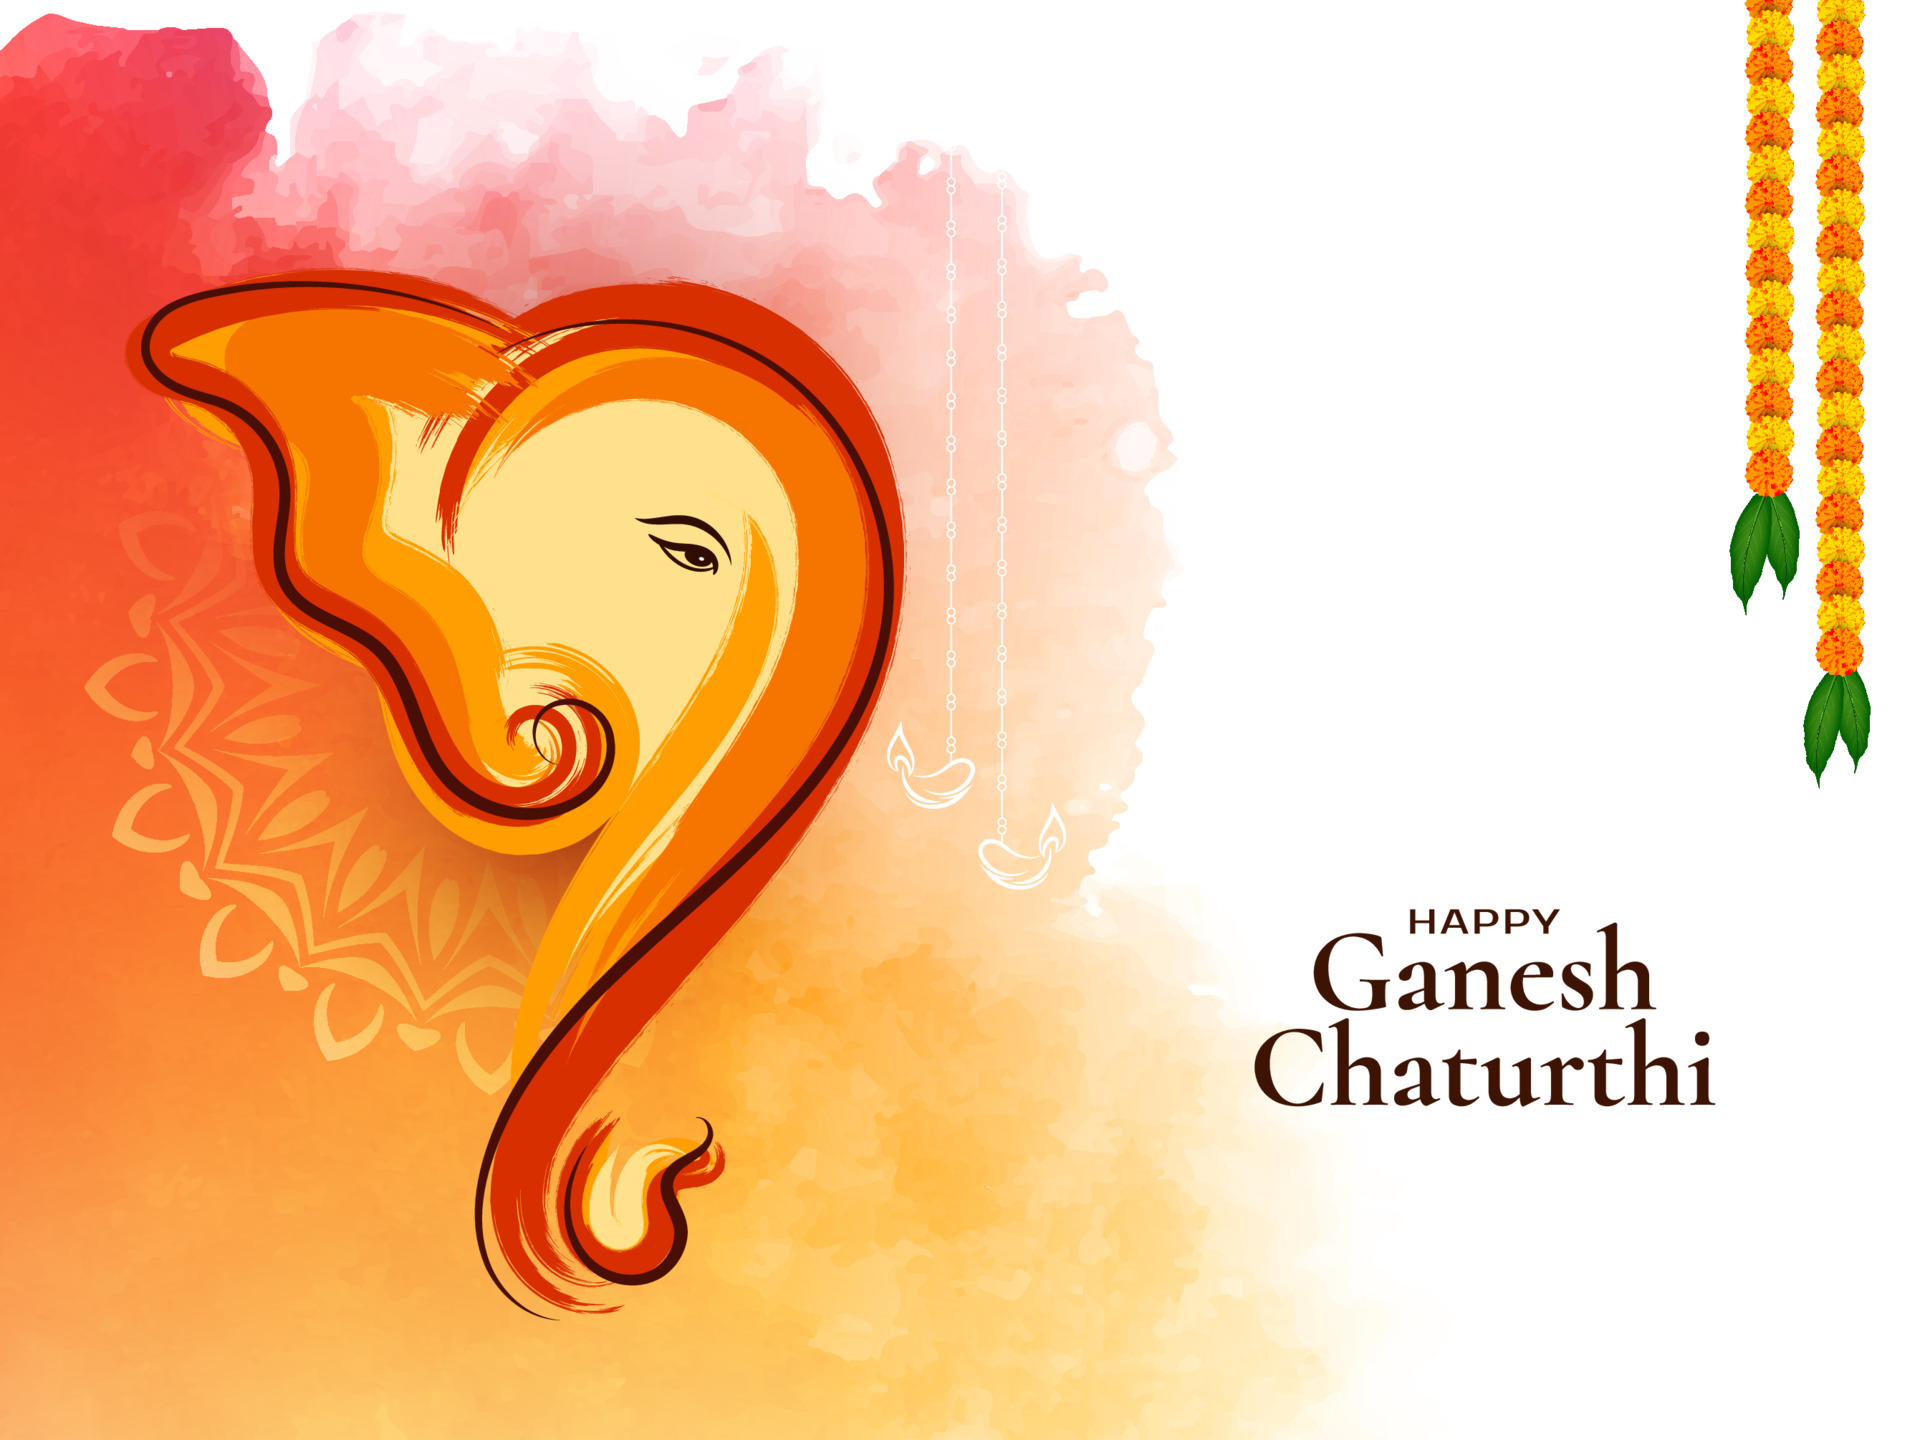 Nền nền chào mừng lễ hội Ganesh Chaturthi tôn giáo Hindu là điểm nhấn tuyệt vời để thưởng thức nét đẹp tự nhiên và kiến trúc trang trí đầy sáng tạo của người Ấn Độ. Hãy tham gia vào trải nghiệm này ngay bây giờ để cảm nhận sự khác biệt và tuyệt vời.